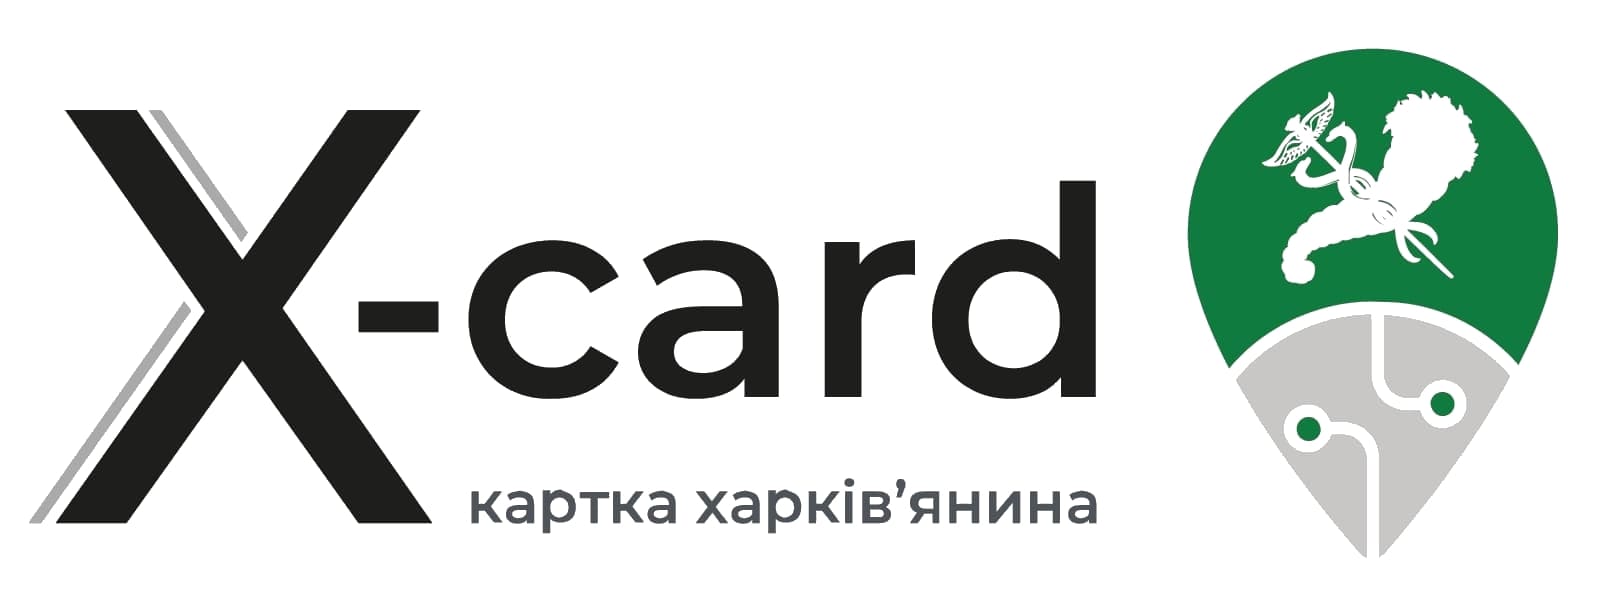 X-card карта харьковчанина партнеры SSE